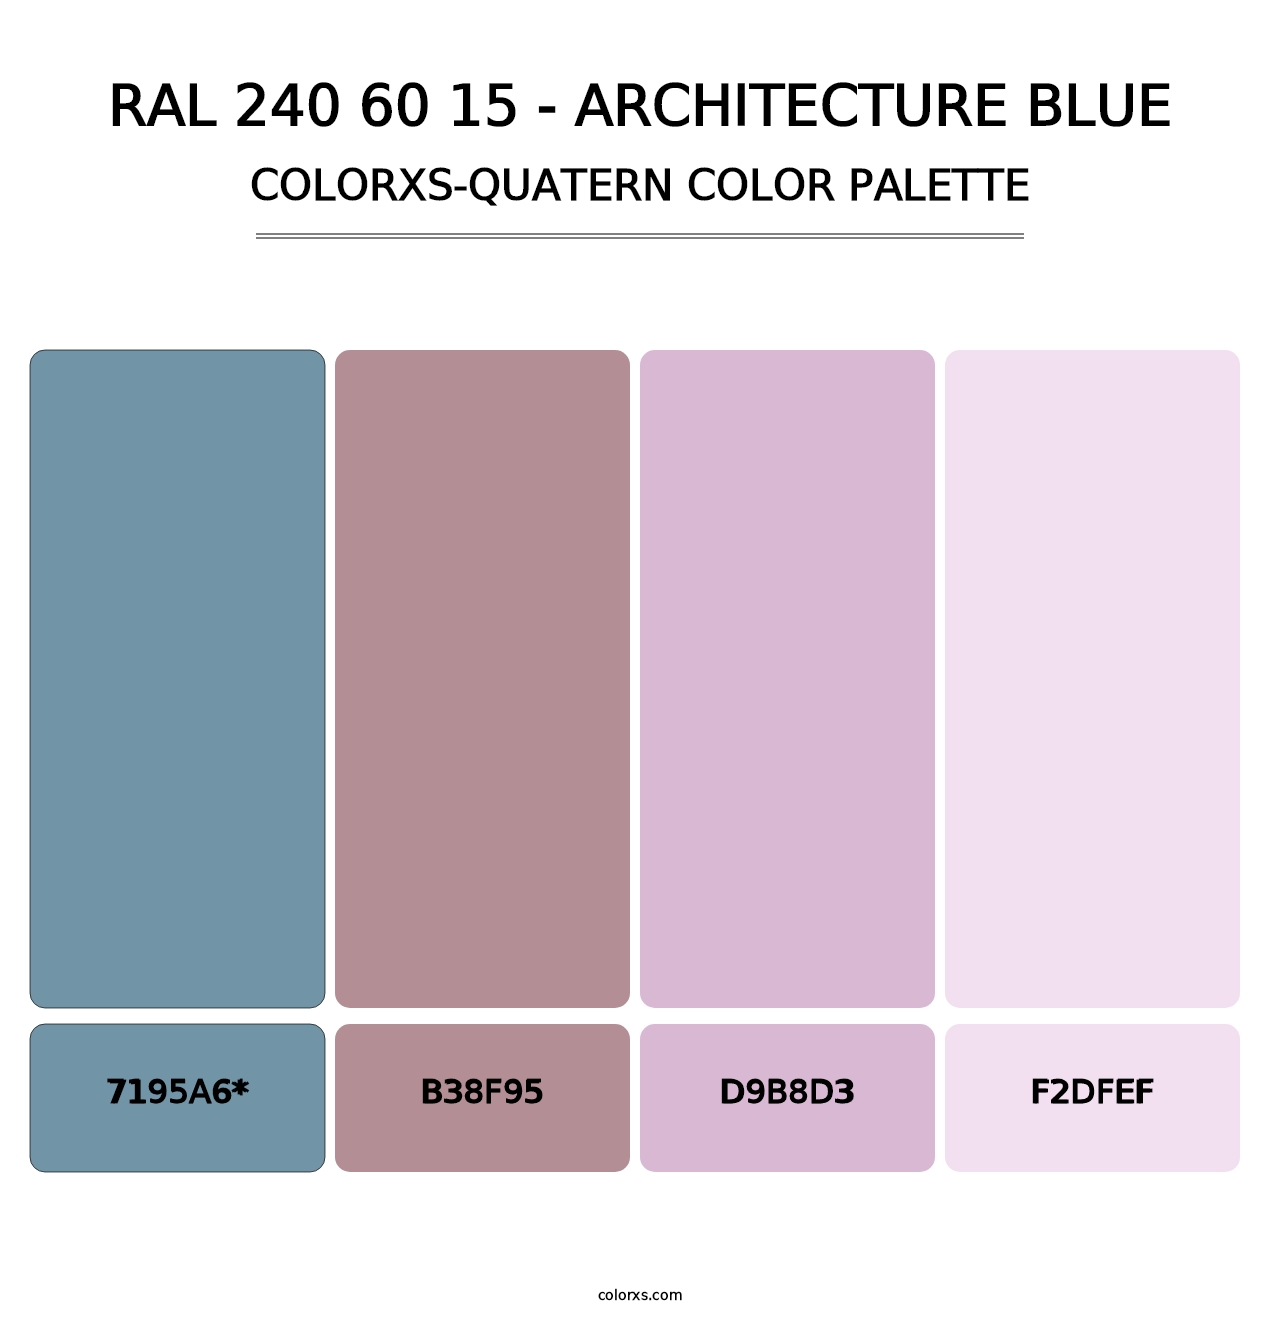 RAL 240 60 15 - Architecture Blue - Colorxs Quatern Palette